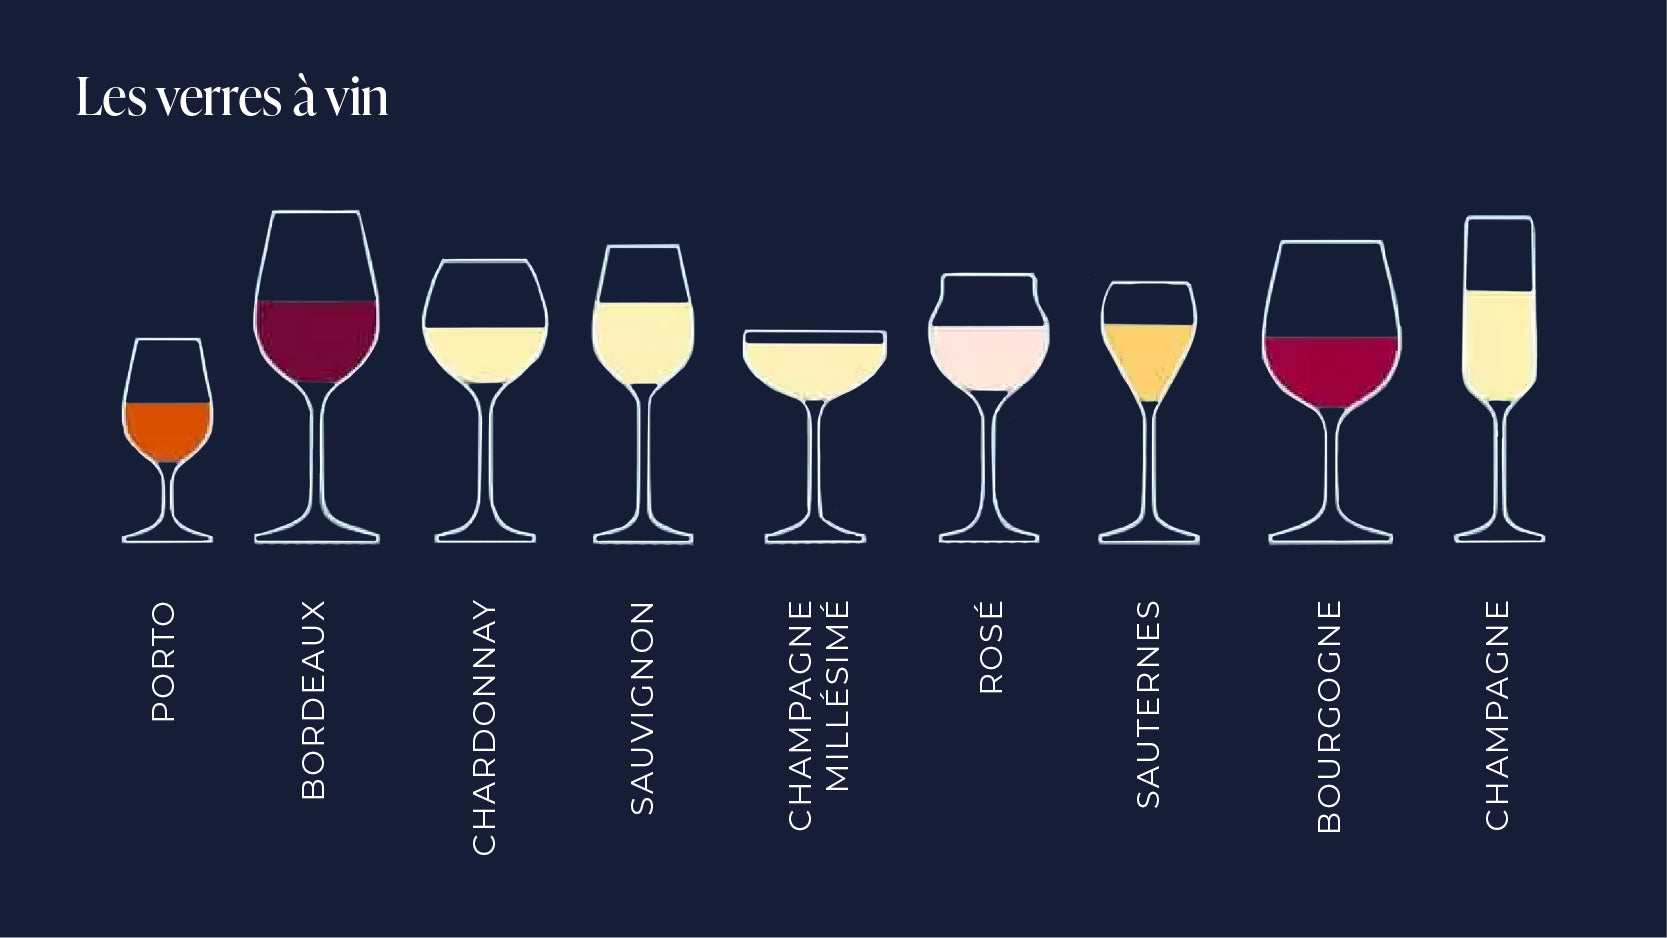 Comment choisir un verre de vin ?